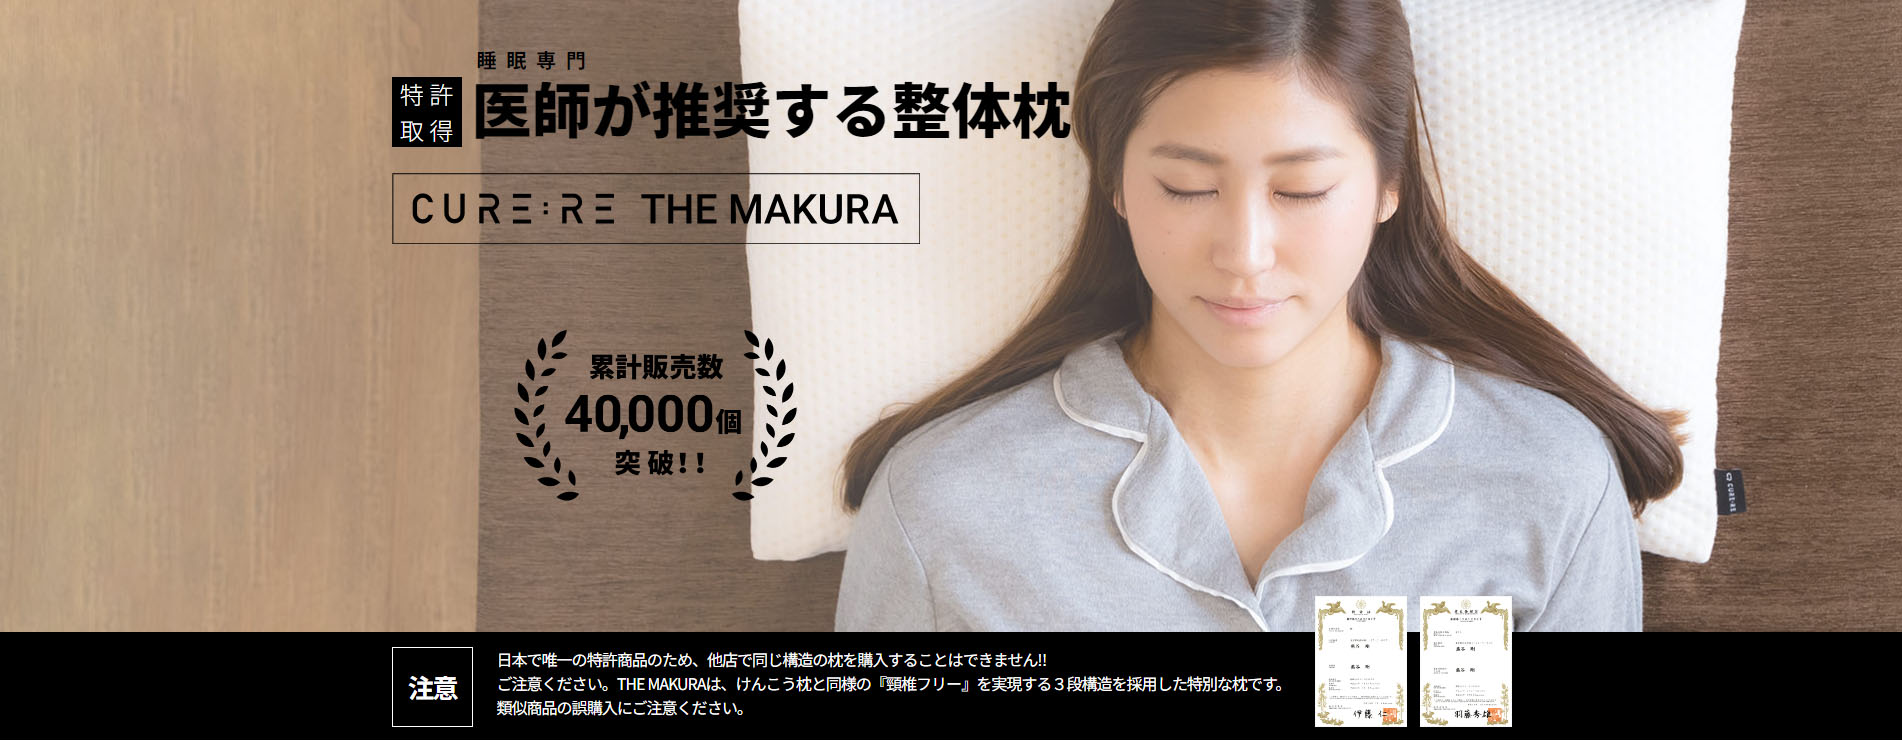 THE MAKURA CURE:RE キュアレ 寝るだけ整体枕 - 寝具